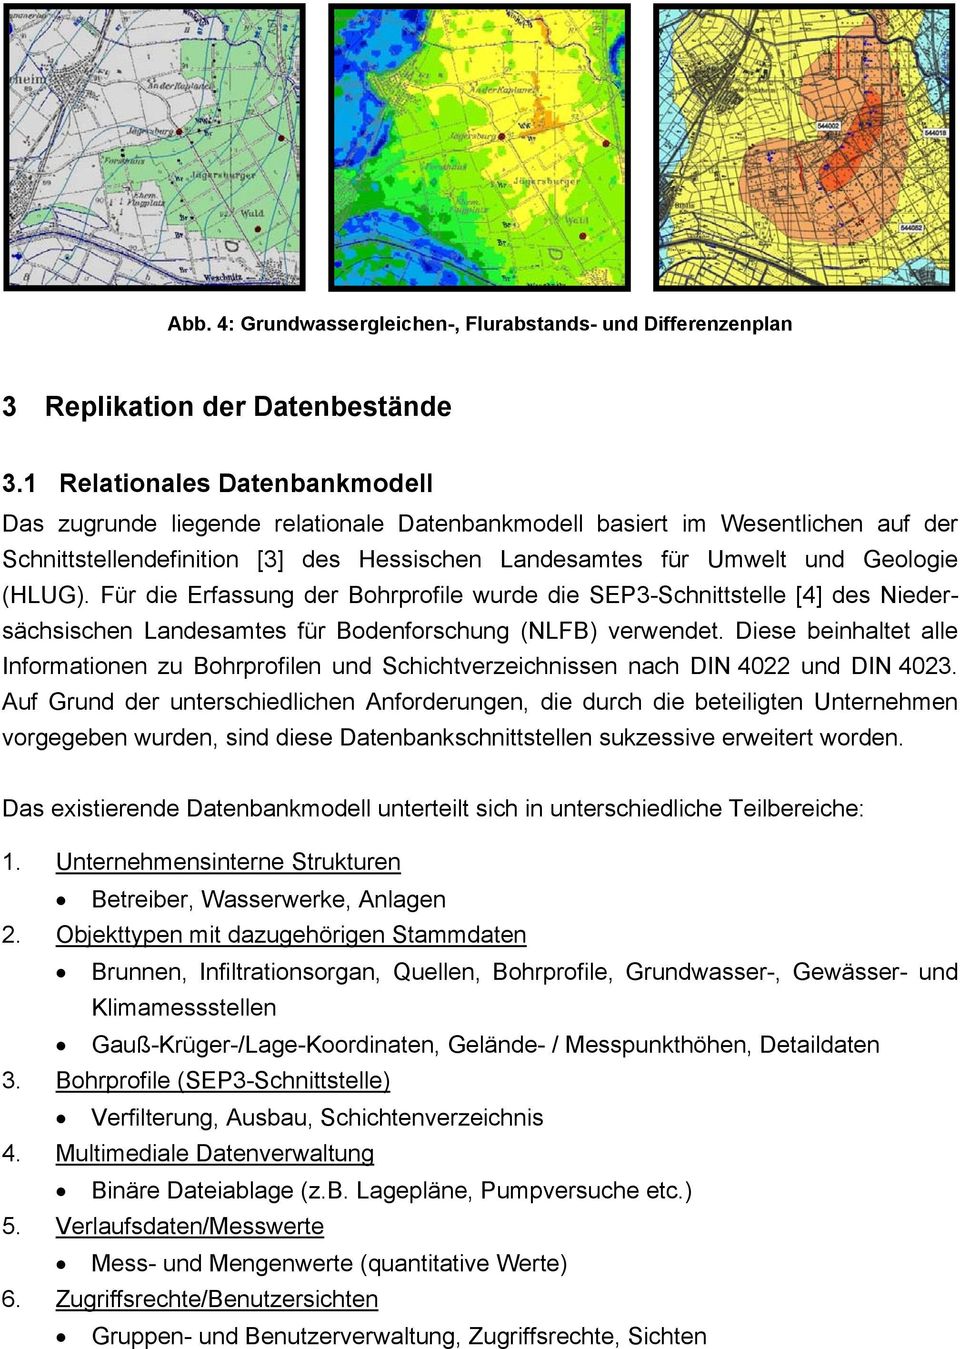 Für die Erfassung der Bohrprofile wurde die SEP3-Schnittstelle [4] des Niedersächsischen Landesamtes für Bodenforschung (NLFB) verwendet.